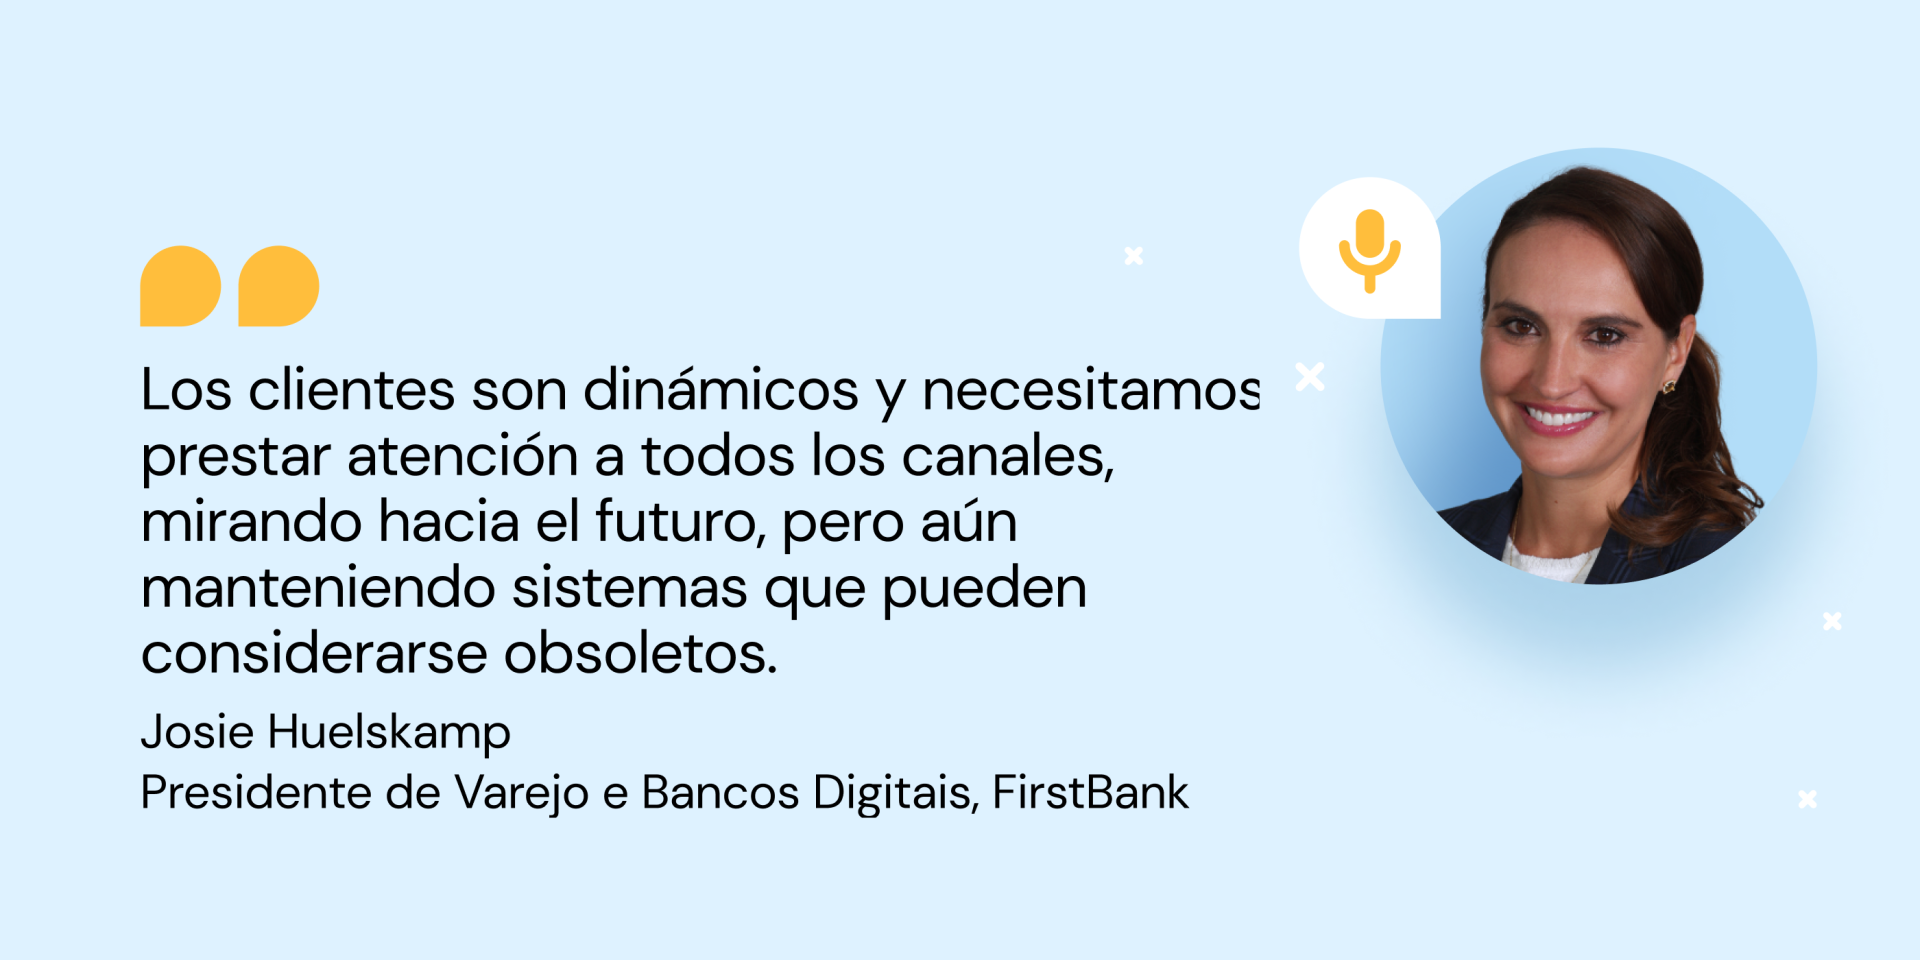 Cita del Presidente de Banca Minorista y Digital de FirstBank